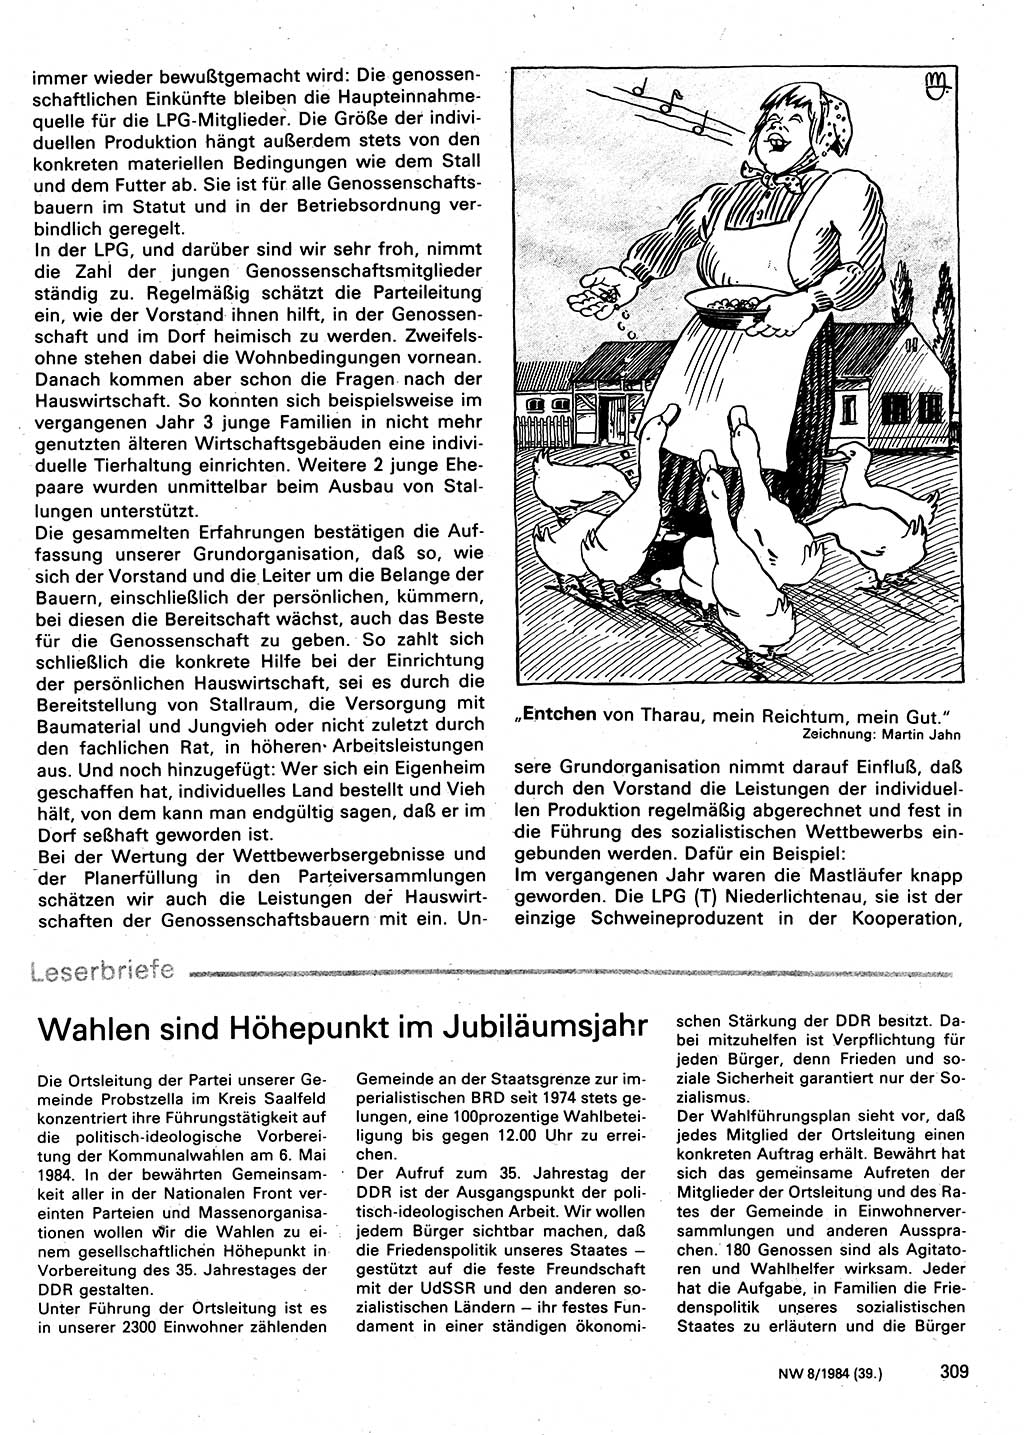 Neuer Weg (NW), Organ des Zentralkomitees (ZK) der SED (Sozialistische Einheitspartei Deutschlands) für Fragen des Parteilebens, 39. Jahrgang [Deutsche Demokratische Republik (DDR)] 1984, Seite 309 (NW ZK SED DDR 1984, S. 309)